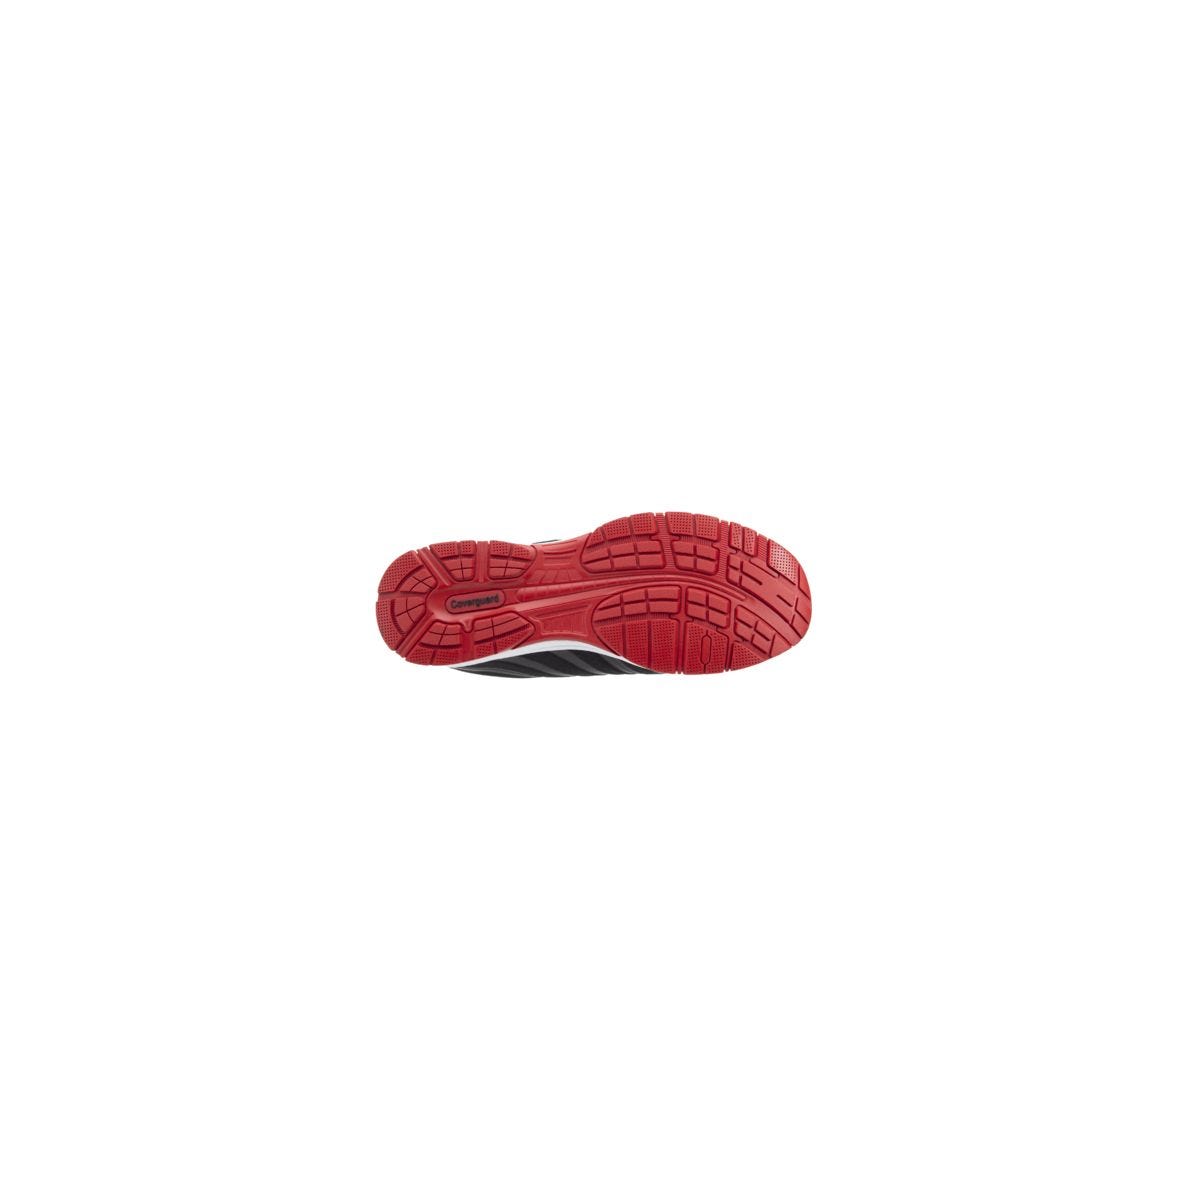 Chaussures de sécurité S1P GALAXITE Basse Maille Noir Rouge ESD - COVERGUARD - Taille 45 1